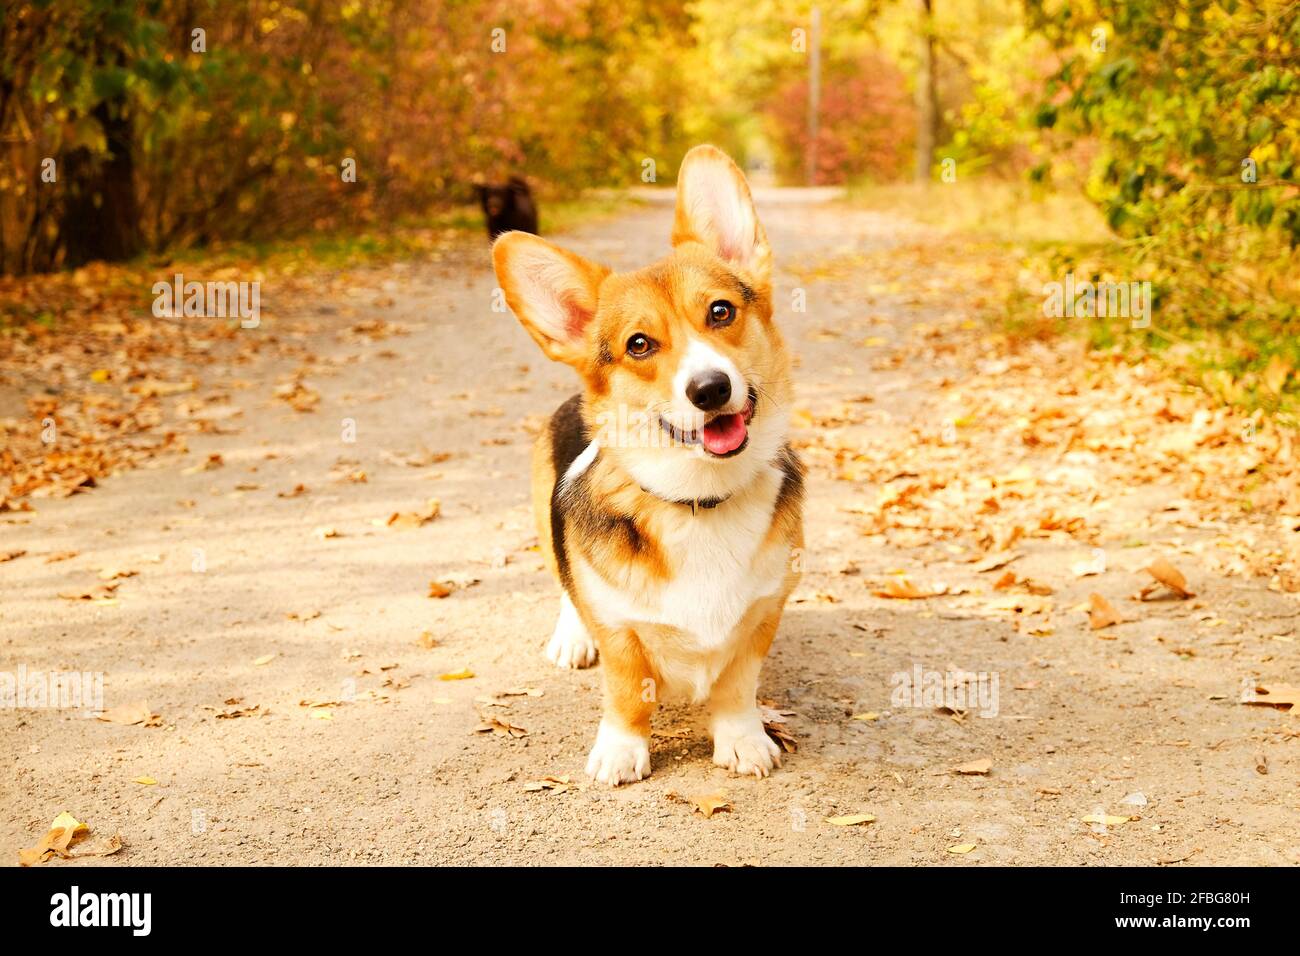 Pembroke welsh Corgi auf einem Spaziergang im Park an schönen warmen Herbsttag. Zwei verschiedene Rassen Hunde spielen im Freien, viele gefallene gelbe Blätter auf dem Boden. Co Stockfoto